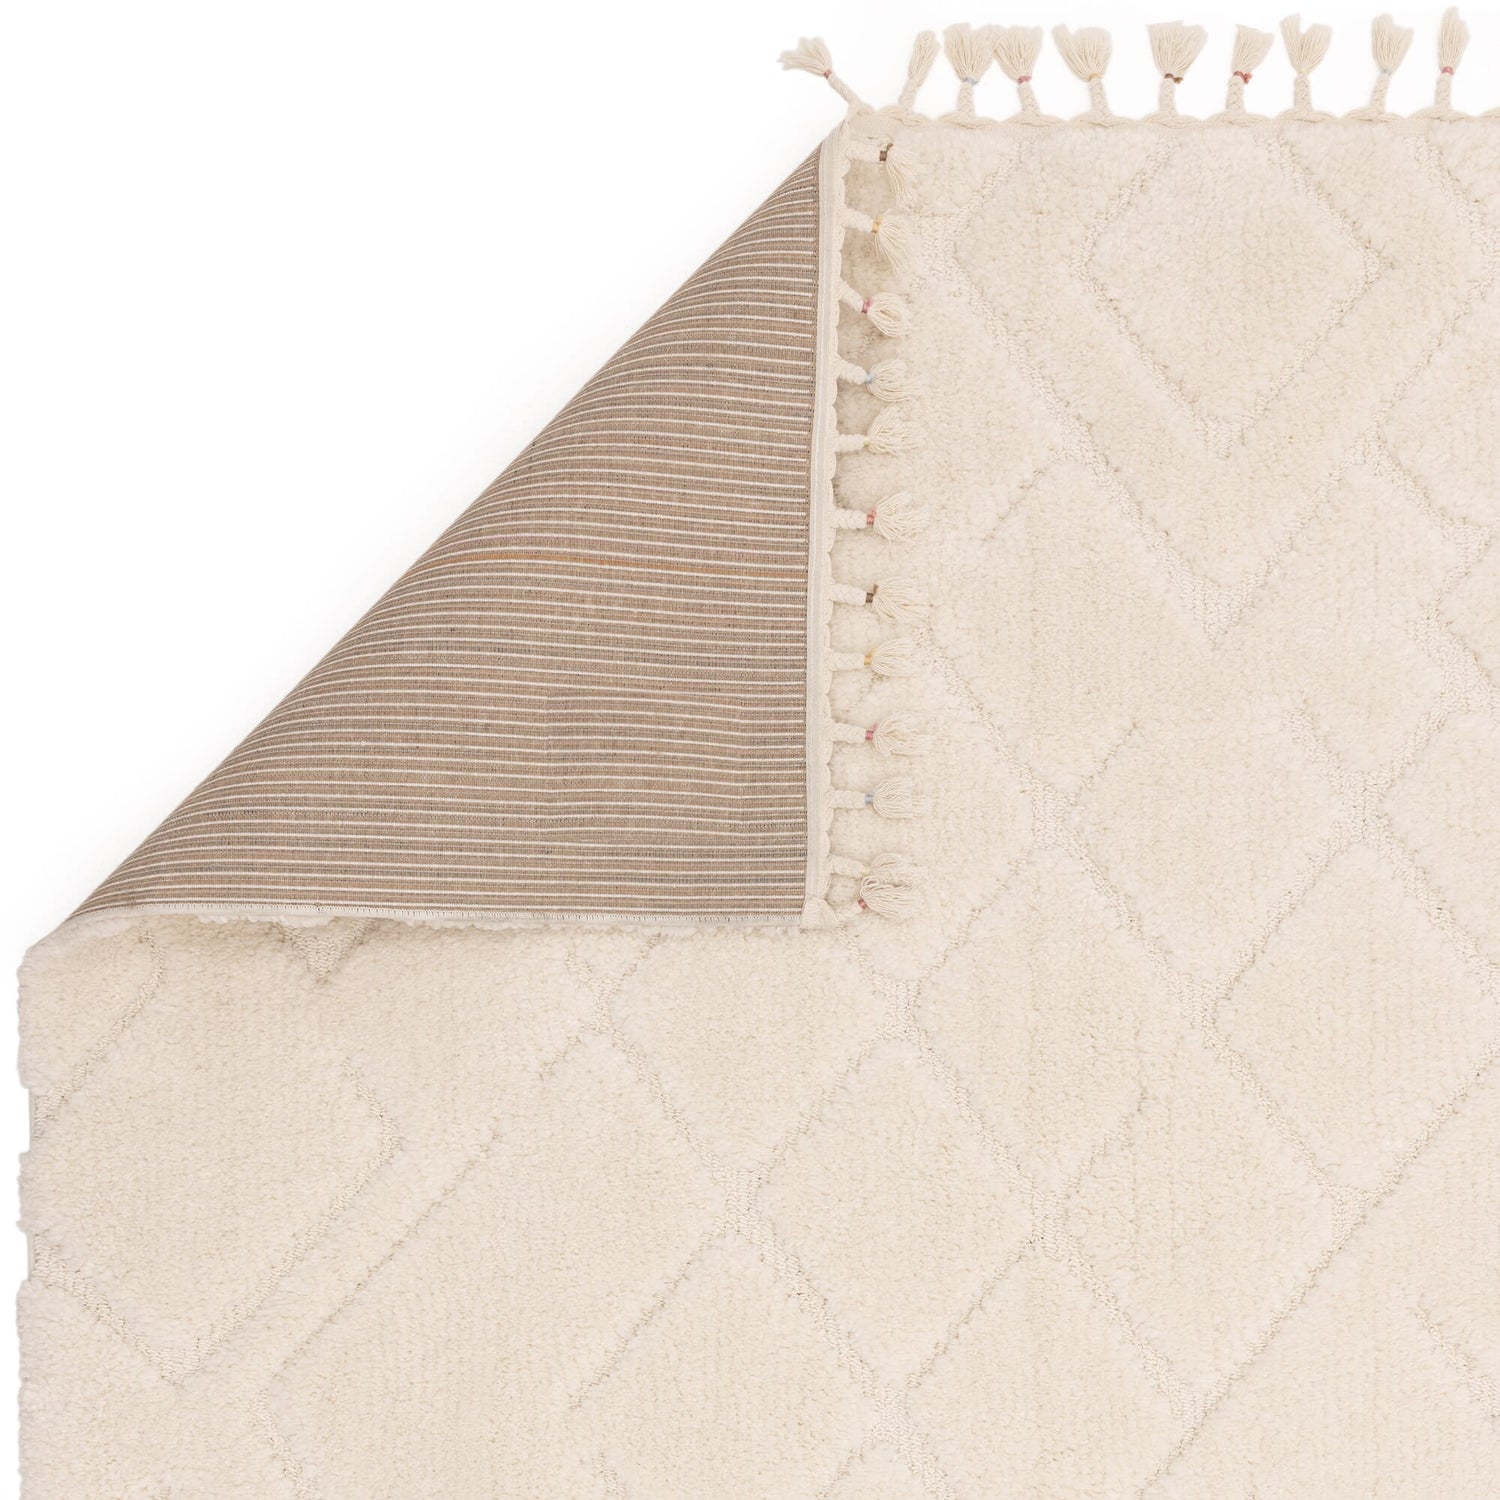  Asiatic Carpets-Asiatic Carpets Ariana Vanilla Rug-Cream, White 725 